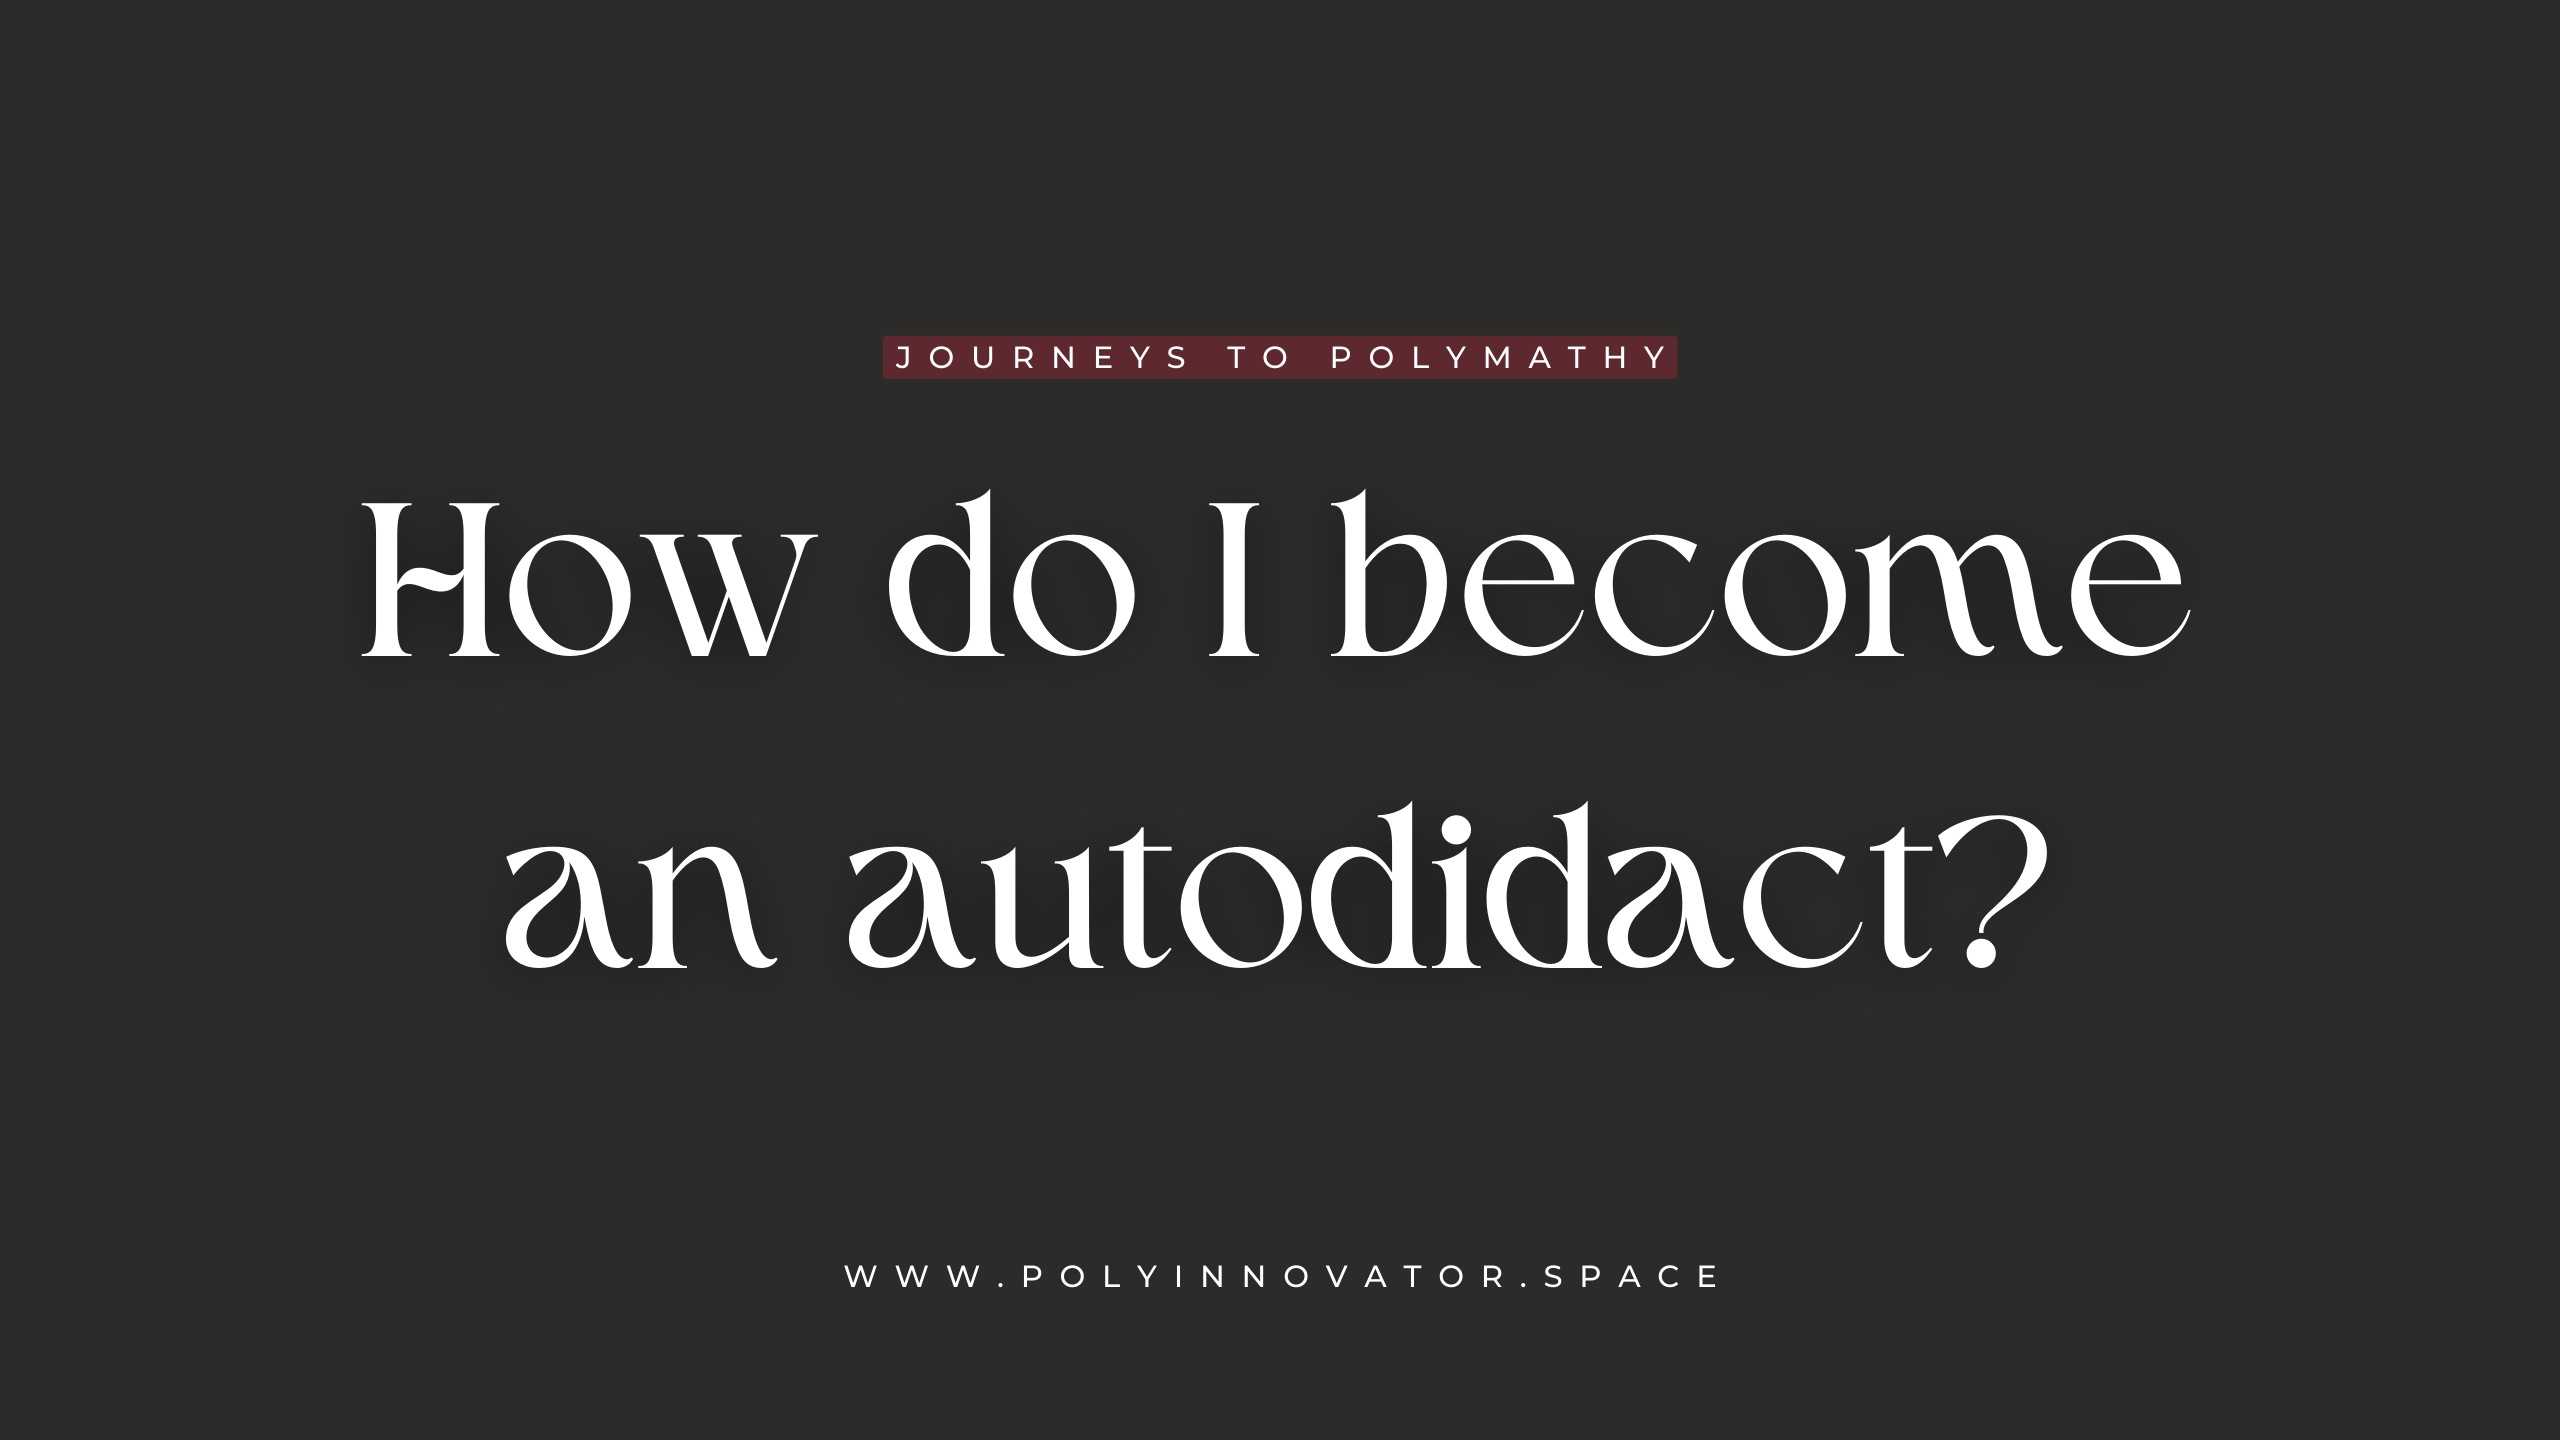 How do I become an autodidact?